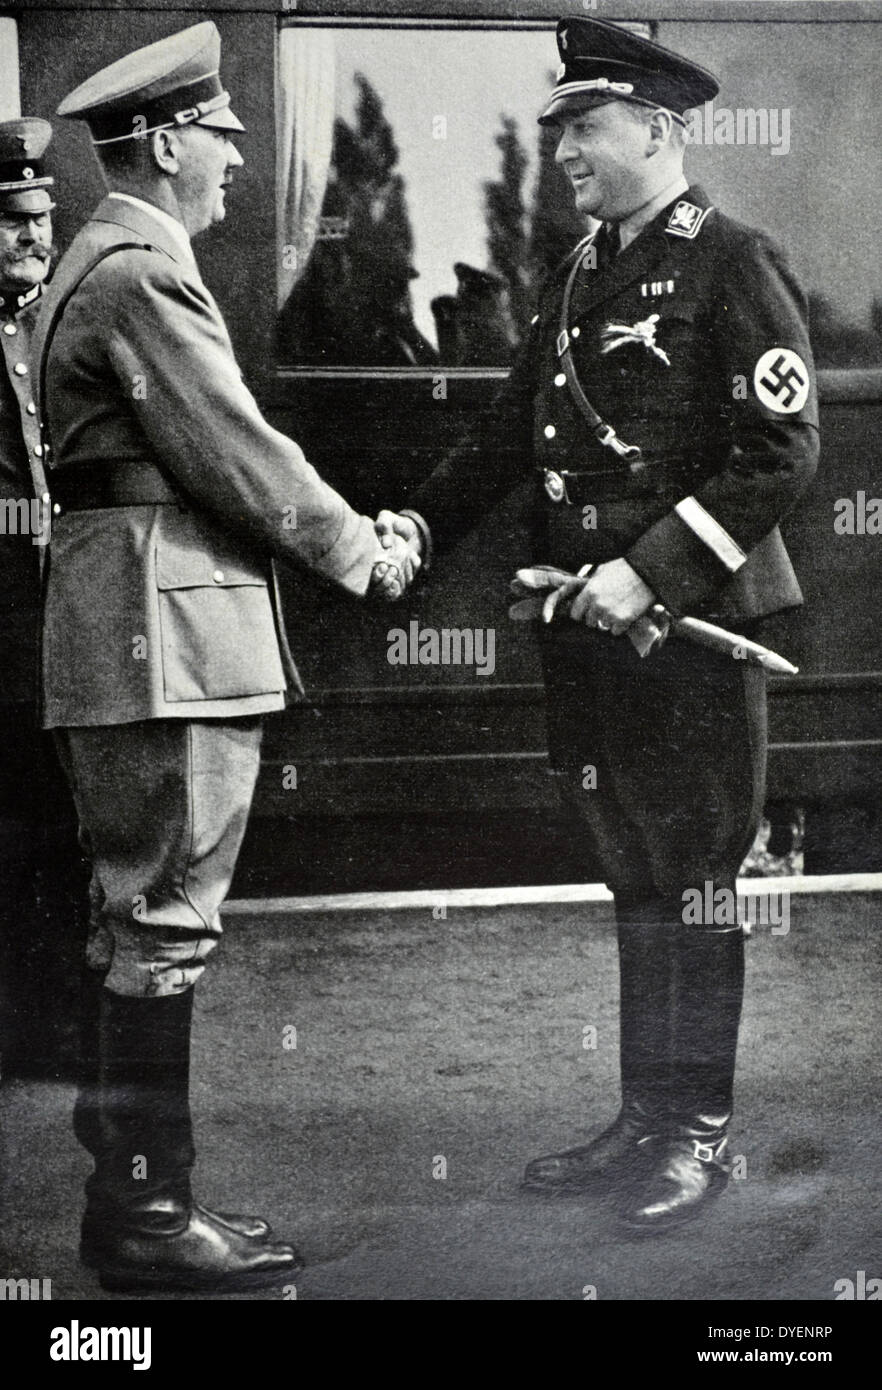 Adolf Hitler wird von Richard Walther Darré (1895-1953), SS-Obergruppenführer und einer der führenden Nazis "Blut und Boden" (deutsch: Blut und Boden) Ideologen met. Er diente als Reichsminister für Ernährung und Landwirtschaft von 1933 bis 1942. Stockfoto